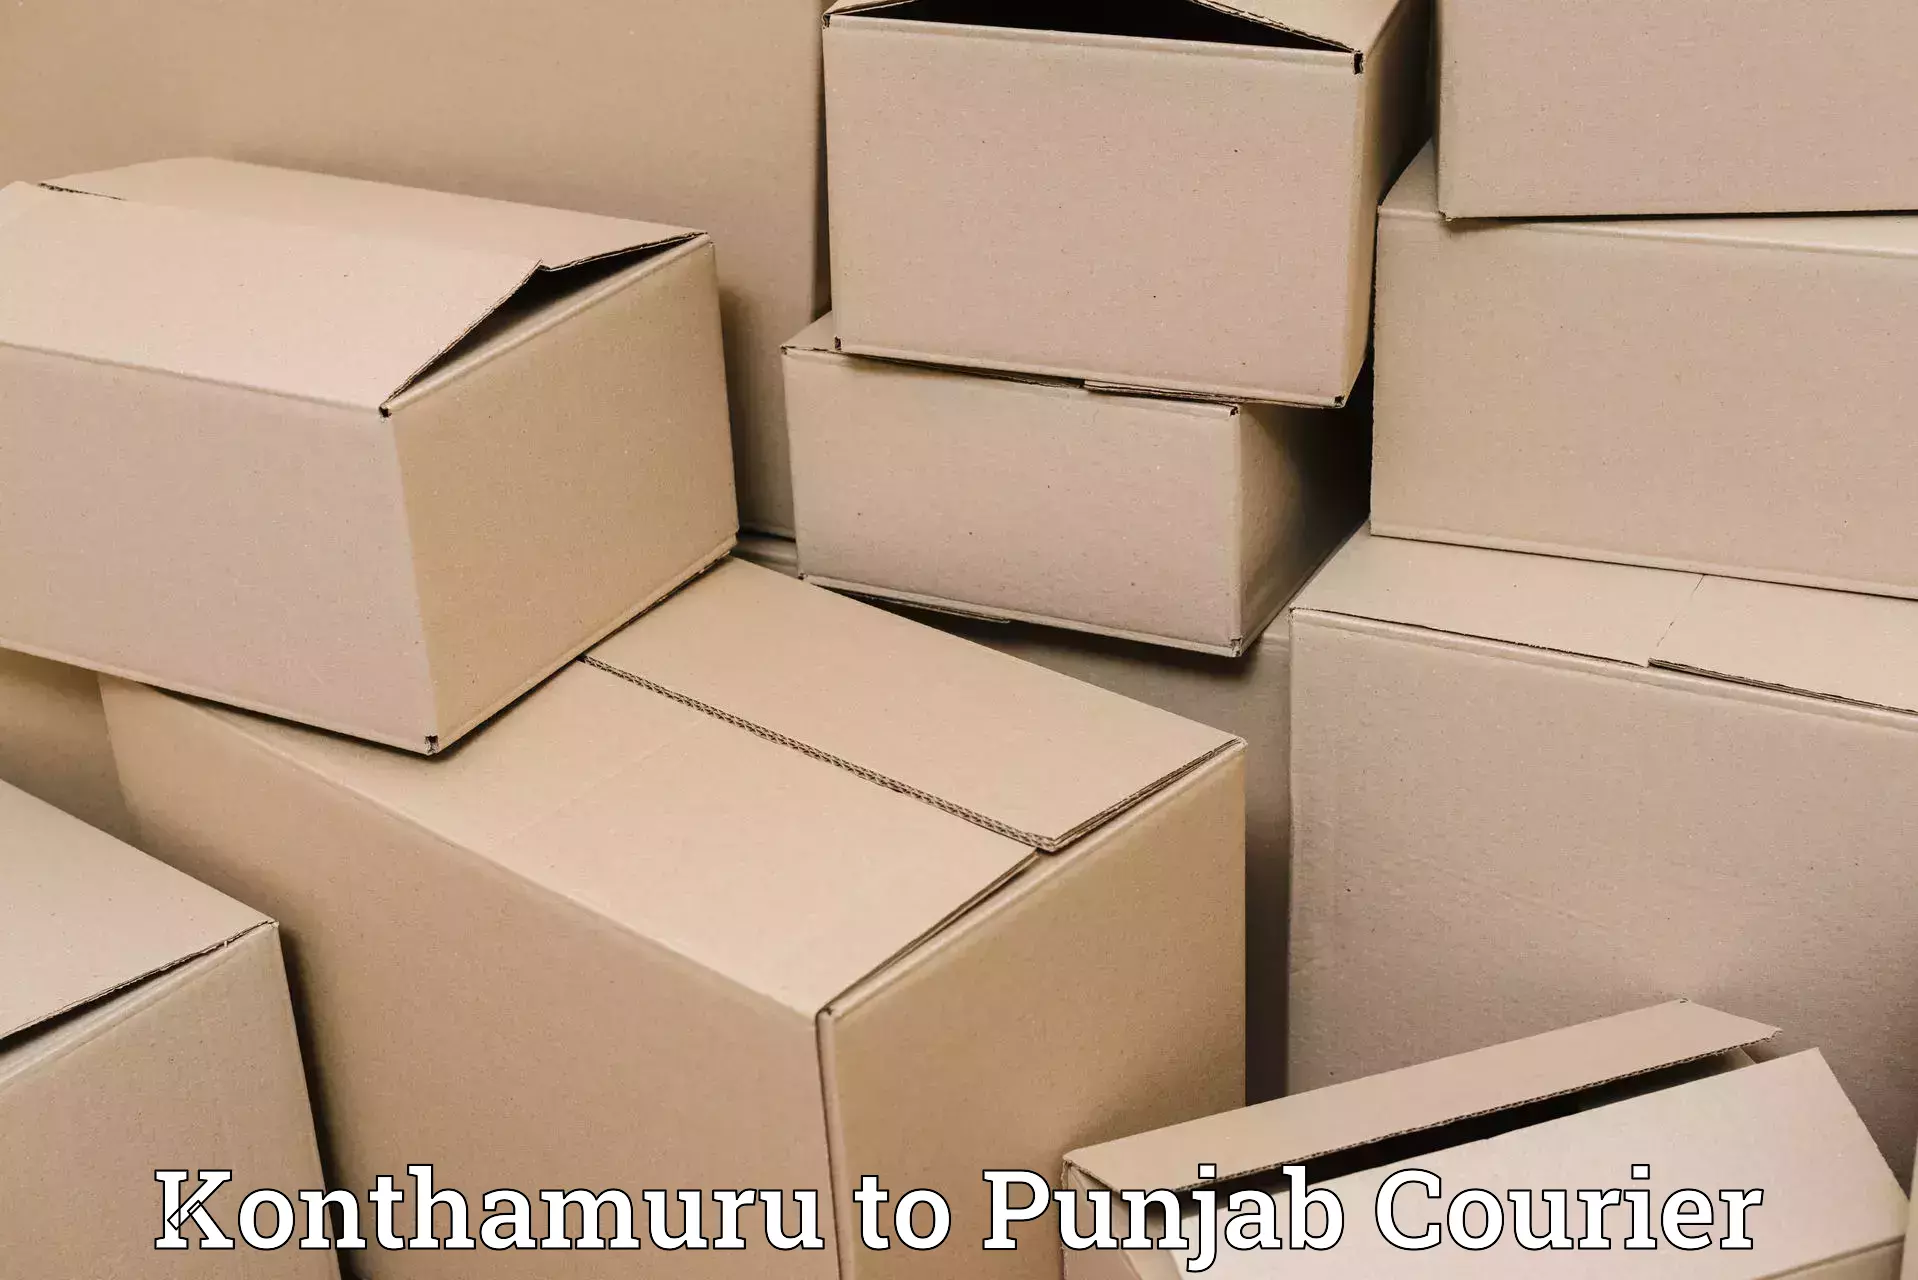 Multi-city courier Konthamuru to Punjab